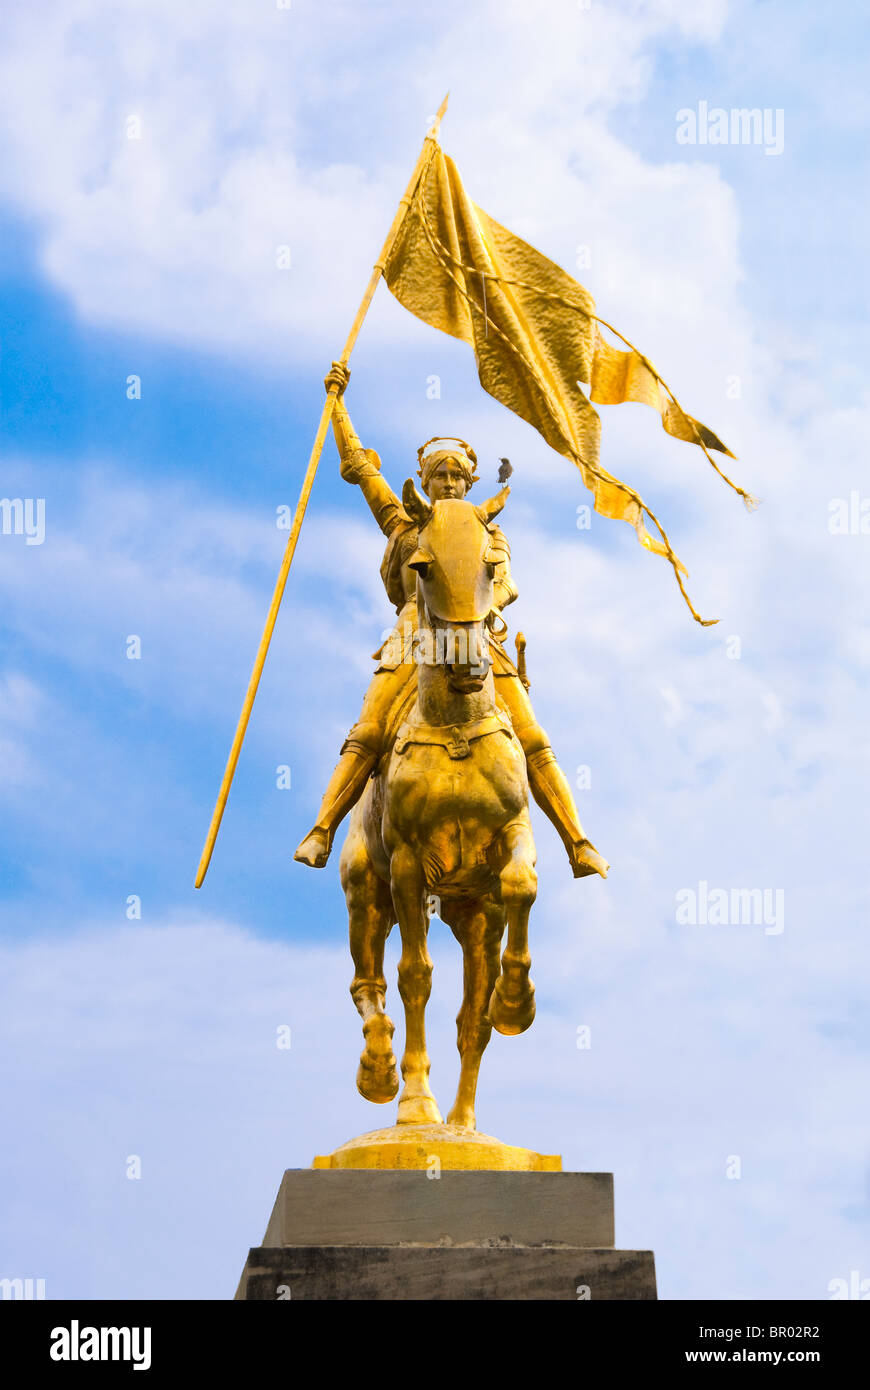 Golden statua equestre in bronzo di Giovanna d'arco nel Quartiere Francese di New Orleans, in Louisiana, Stati Uniti d'America Foto Stock